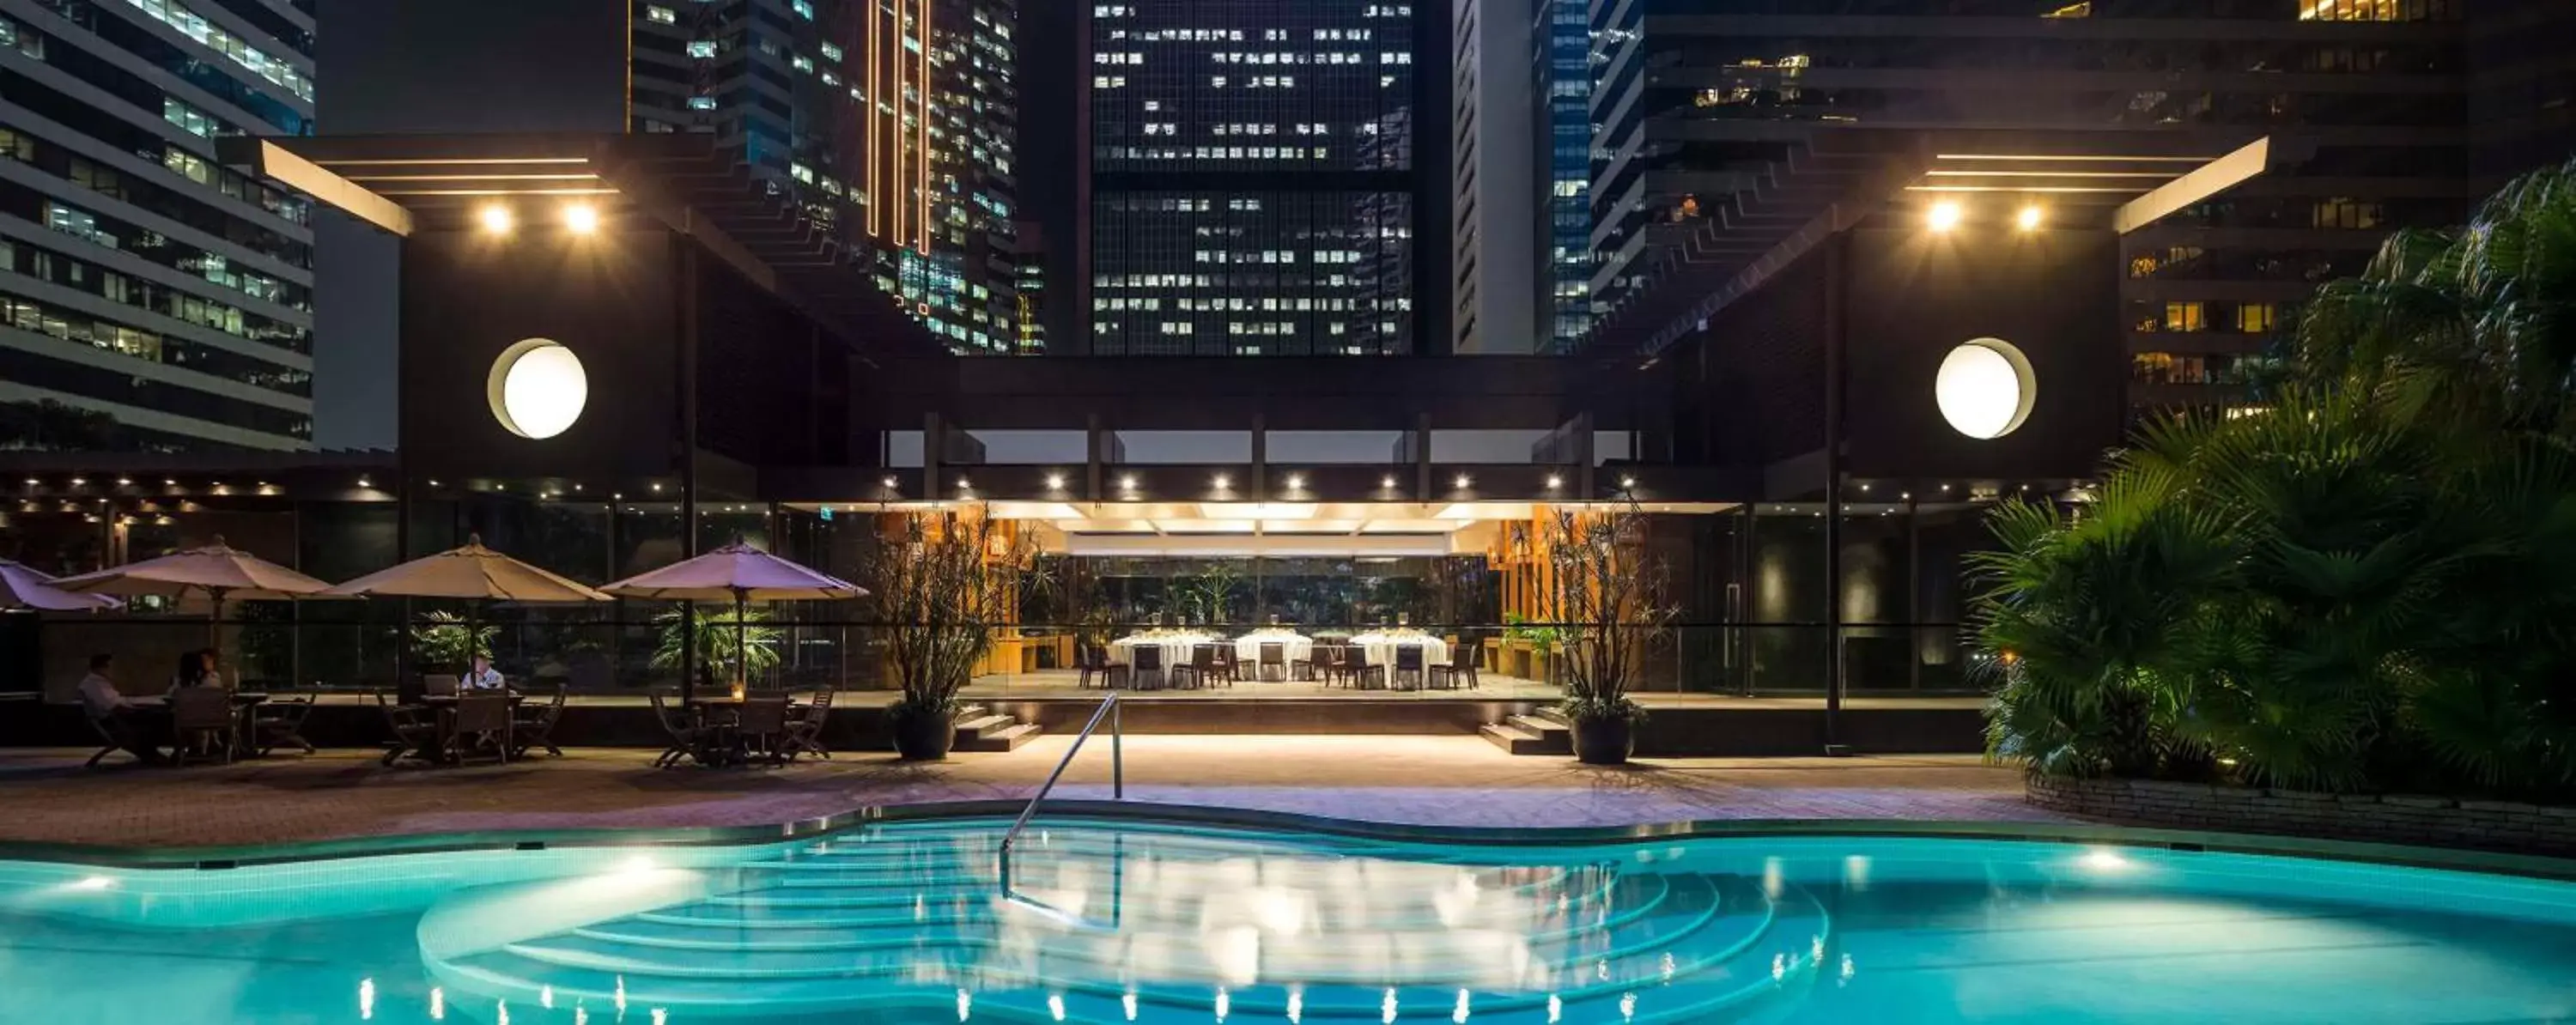 Swimming Pool in Grand Hyatt Hong Kong